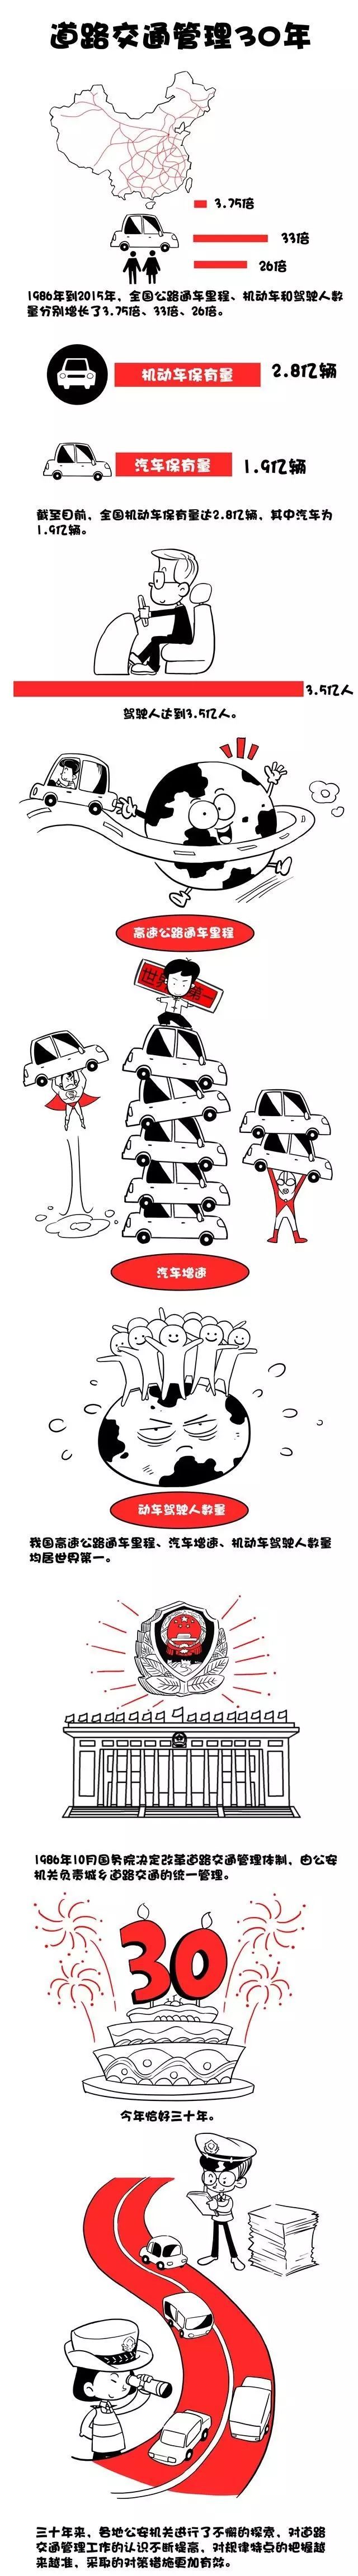 漫画识别身边的违章资料下载-漫画展示丨中国道路交通30年